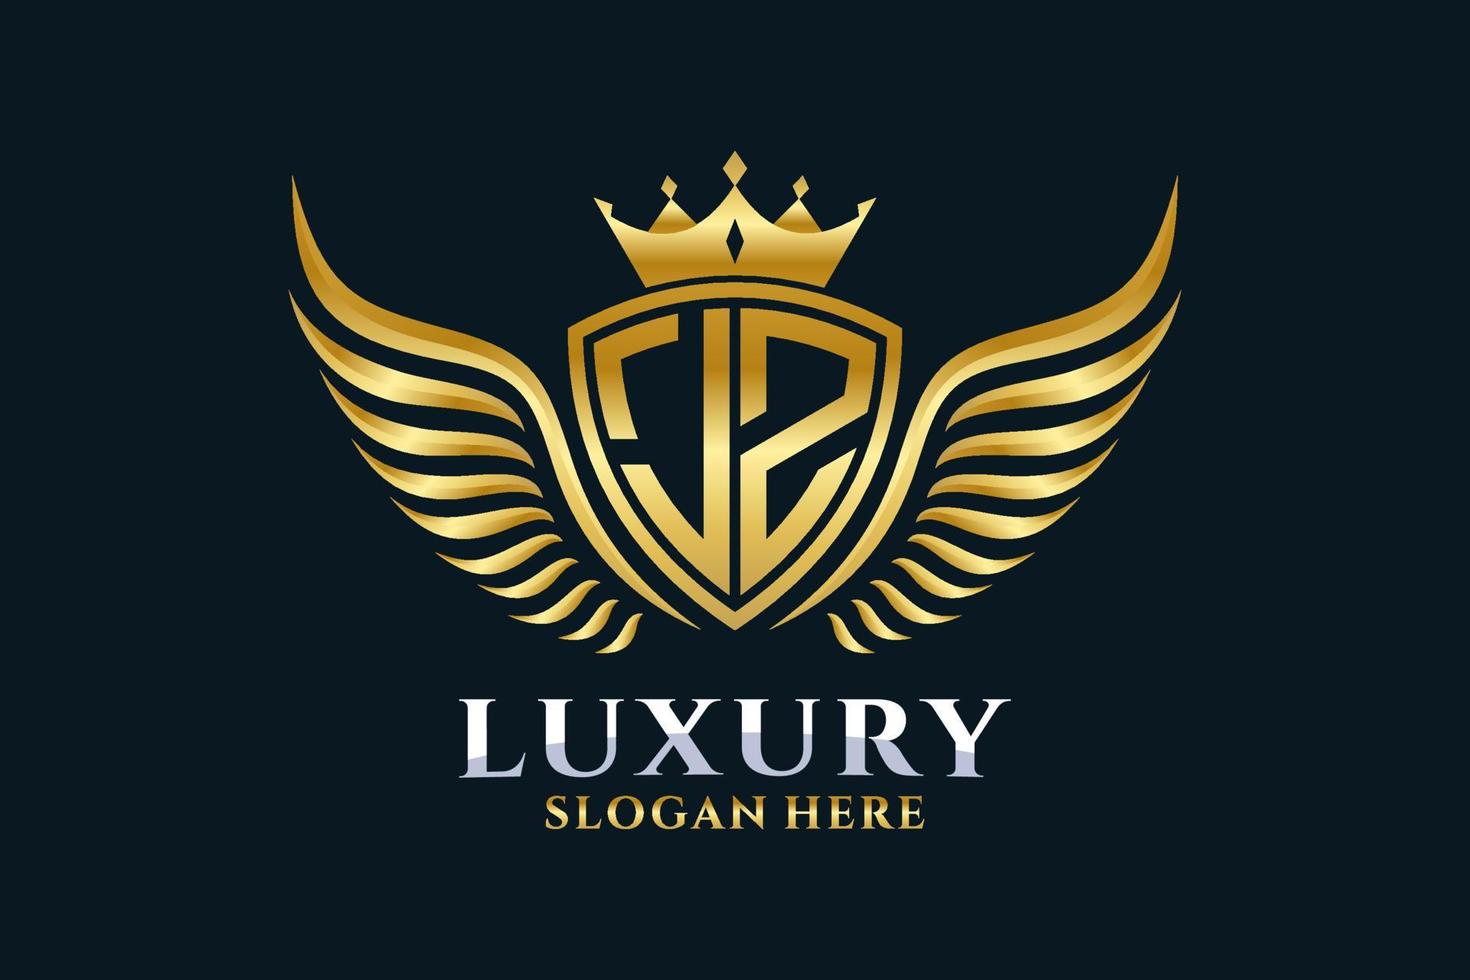 lettre d'aile royale de luxe jz crête logo couleur or vecteur, logo de victoire, logo de crête, logo d'aile, modèle de logo vectoriel. vecteur